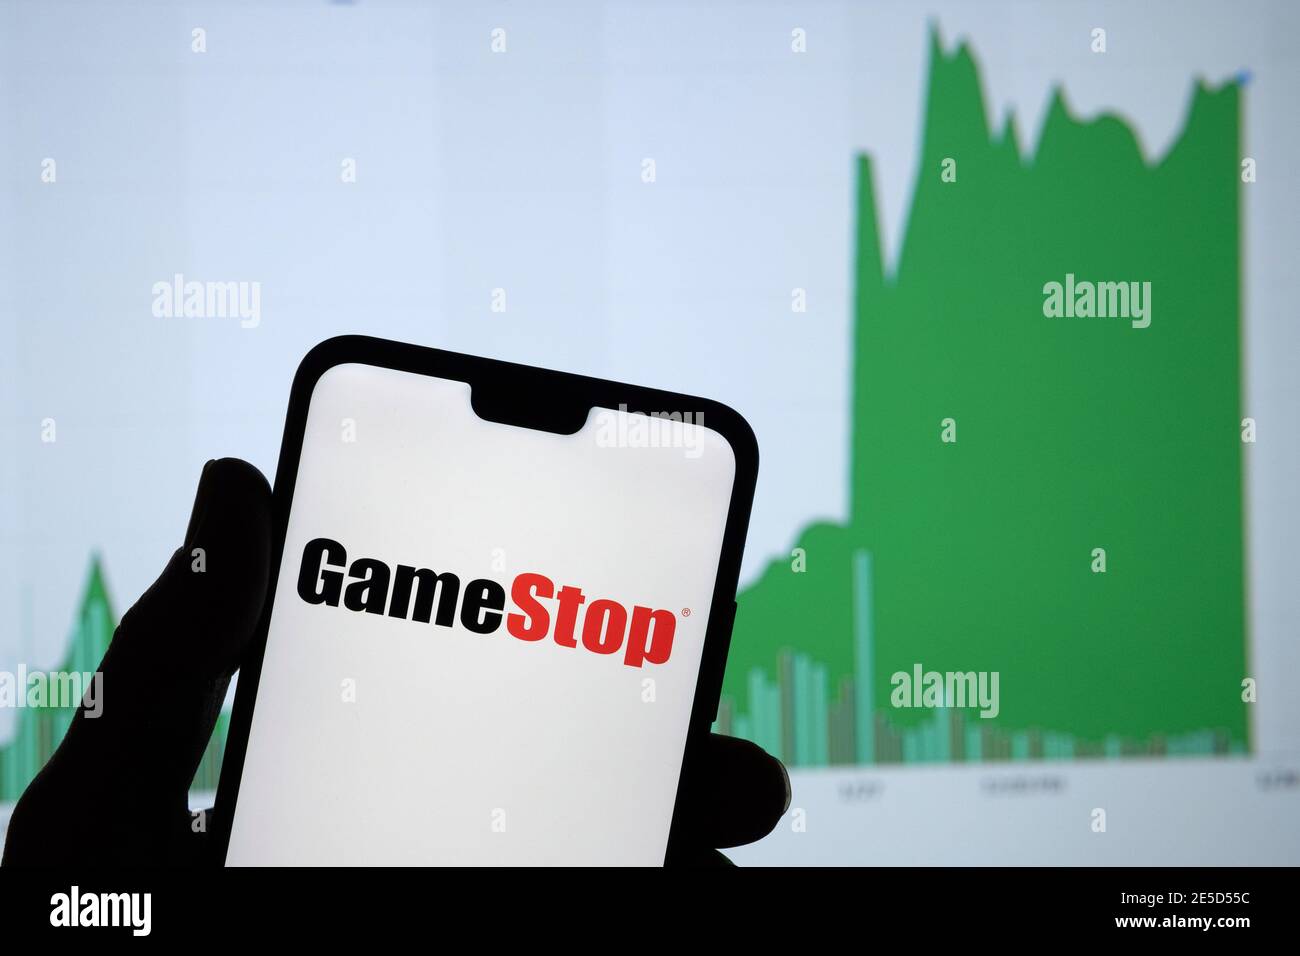 GameStop Handelsunternehmen Logo auf dem Smartphone und seine authentische Aktienkurs-Chart für die letzten 5 Tage. Stafford, Vereinigtes Königreich - Januar 27 2021. Stockfoto